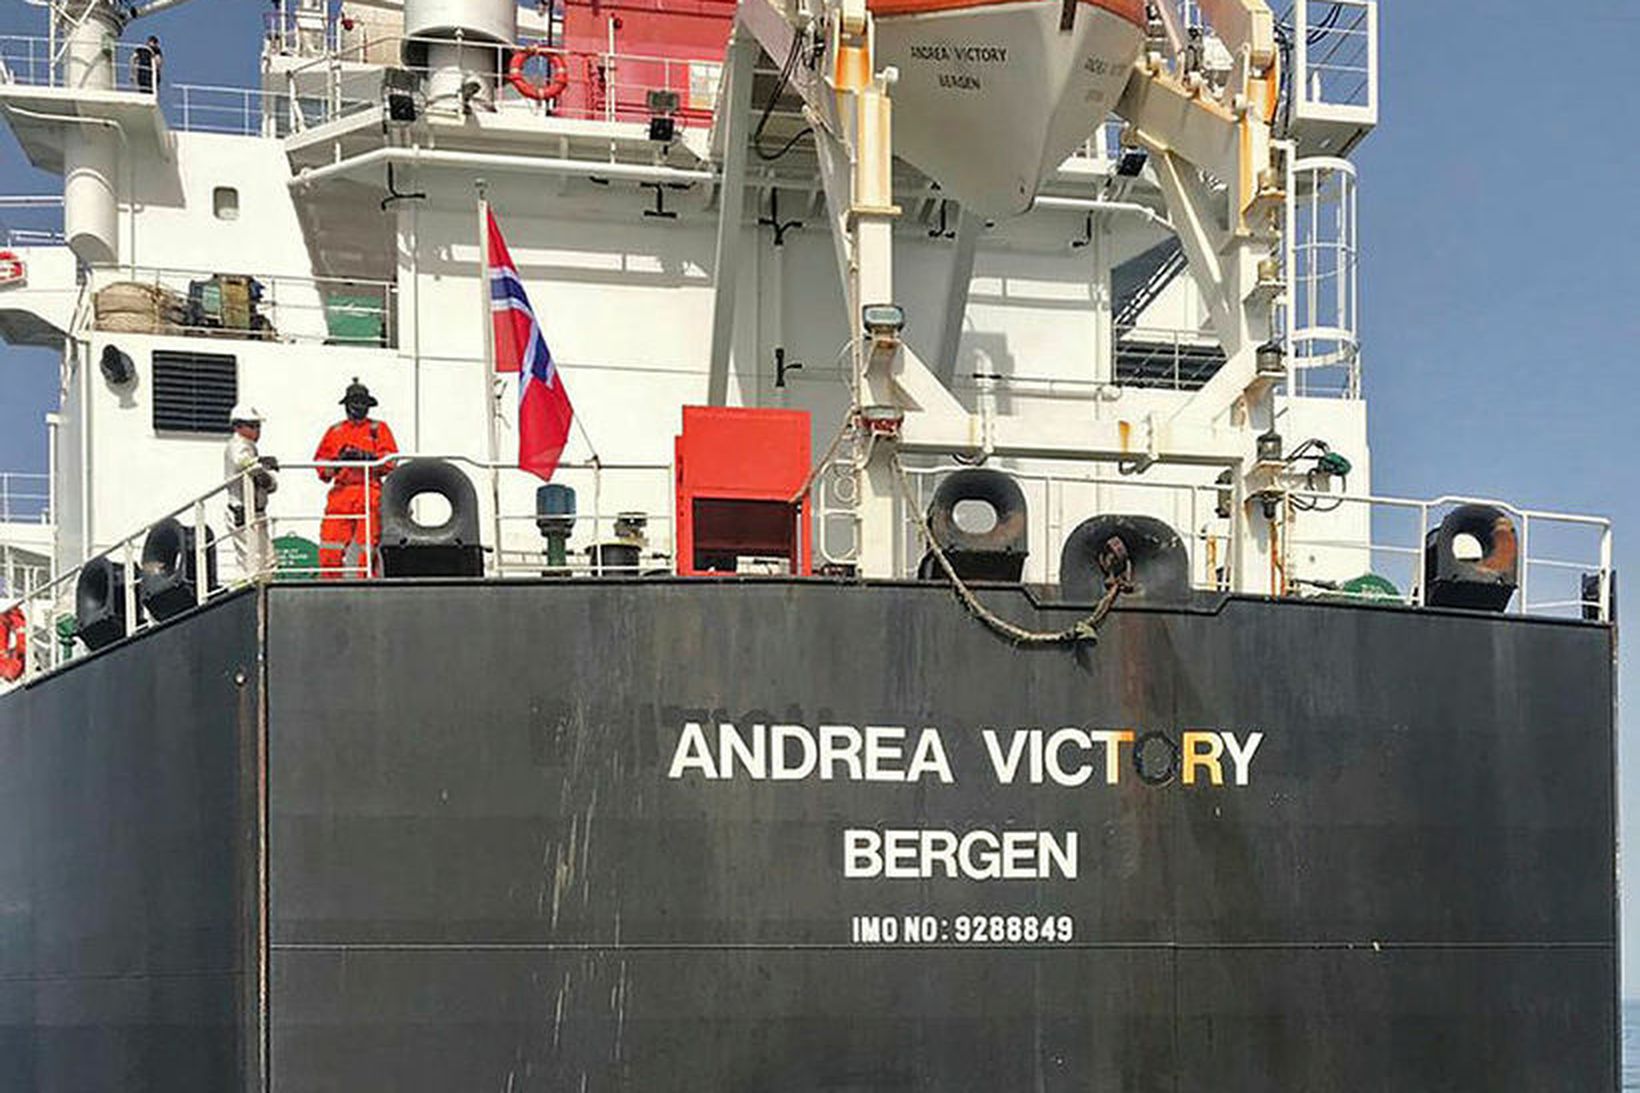 Mynd sem tekin var í dag af norska tankskipinu Andrea …